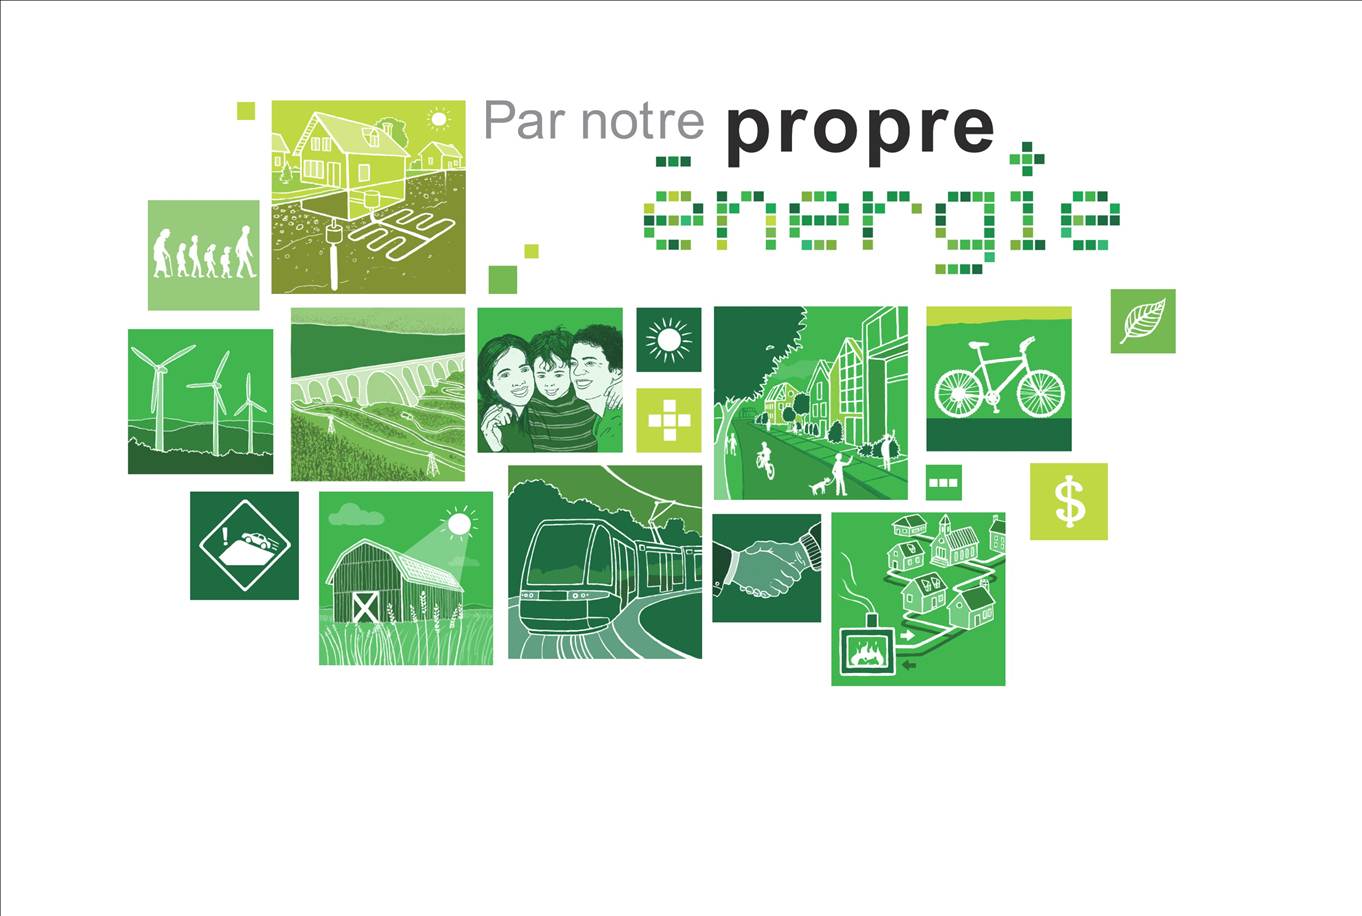 « Par notre PROPRE énergie », vers une réduction de la consommation de pétrole au Québec (Phases 1 et 2)